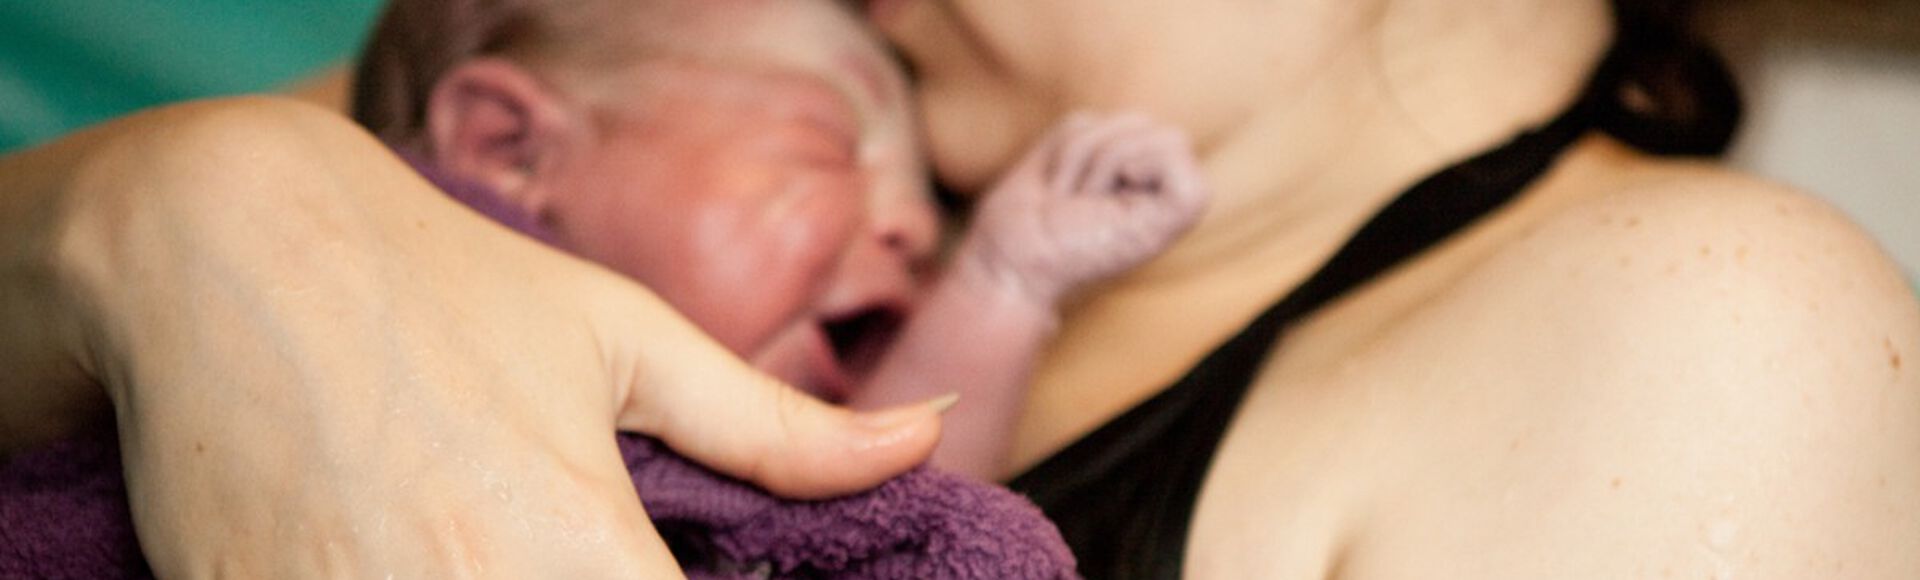 Gestante com recém-nascido em parto humanizado em banheira